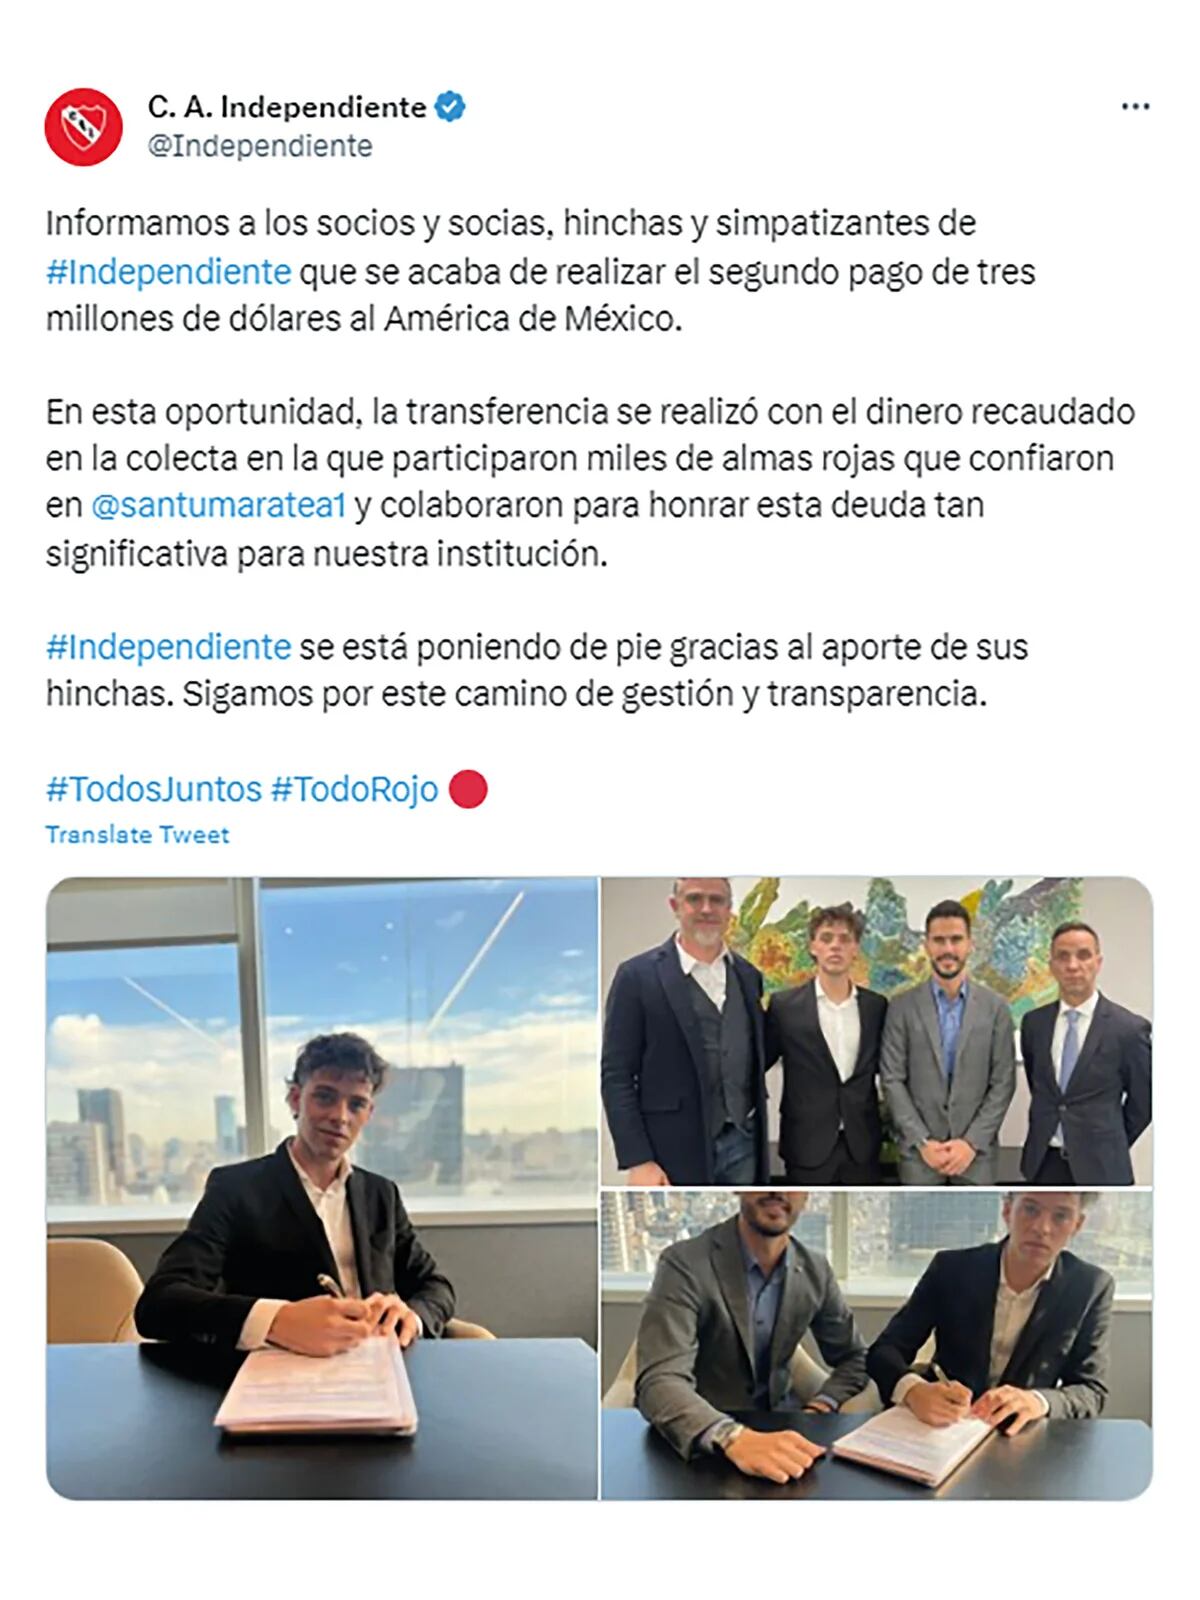 La deuda de Independiente: detalle, acreedores y cuánto espera juntar Santi  Maratea